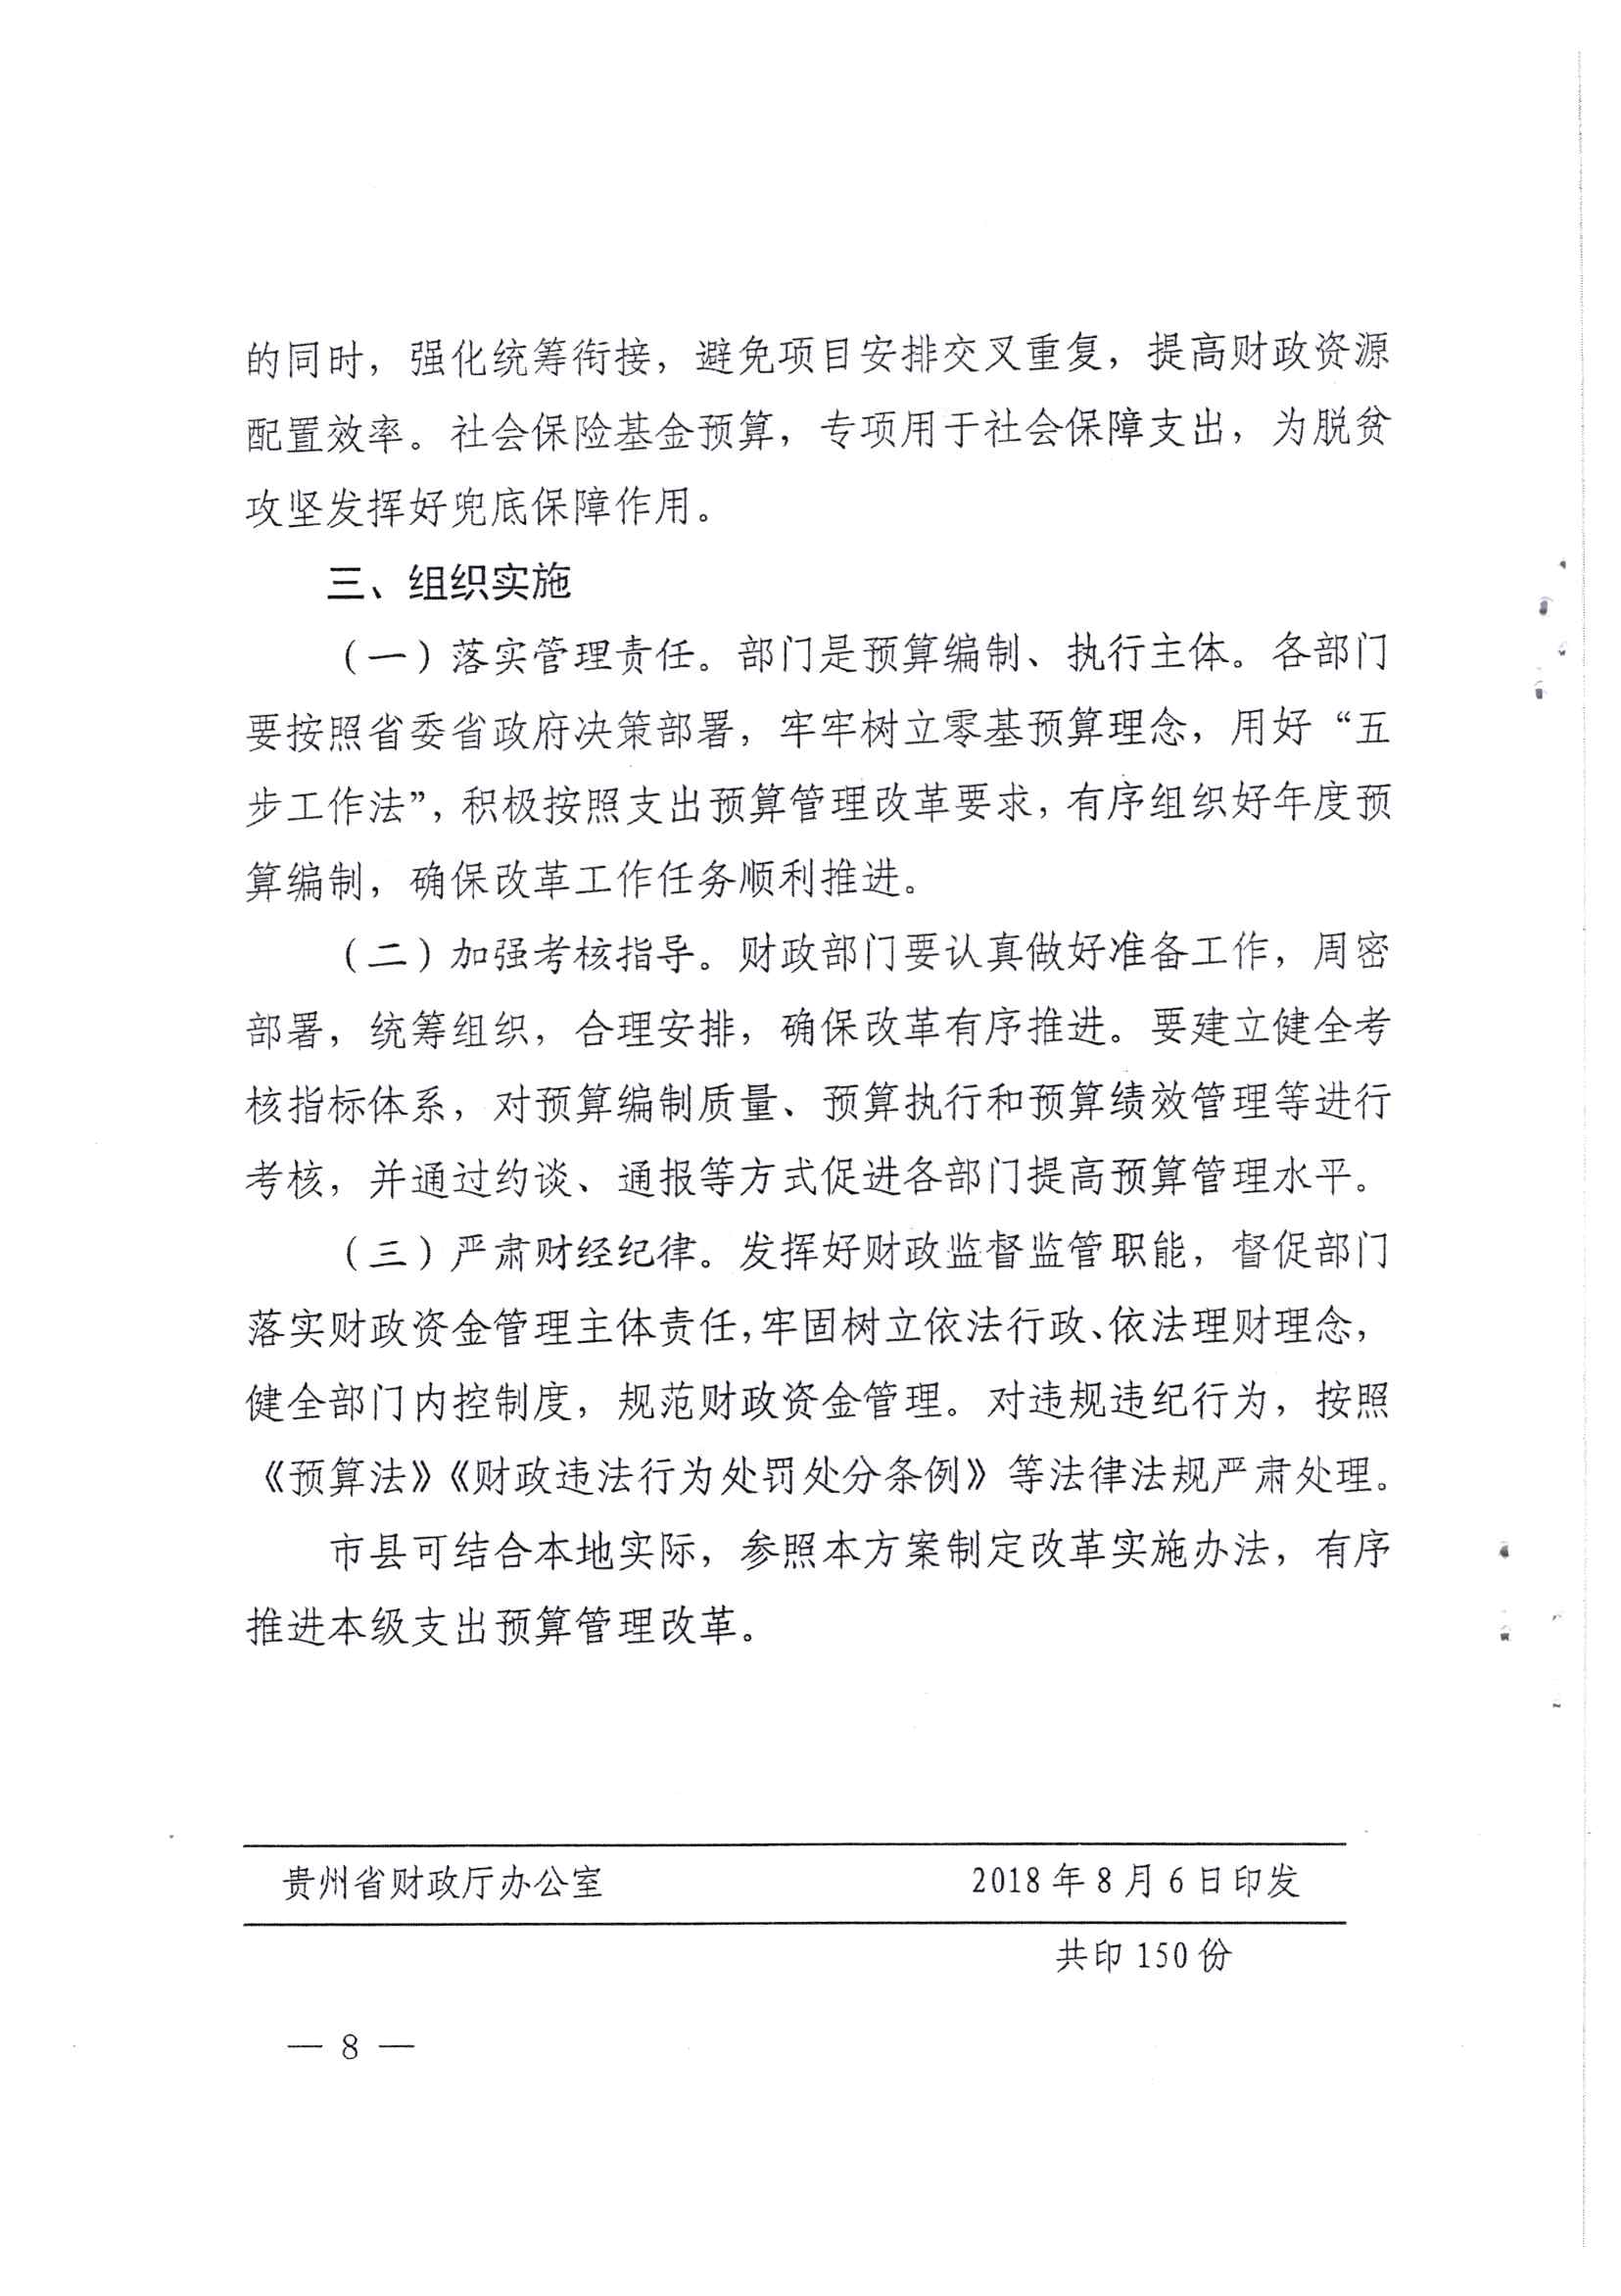 贵州省财政厅关于印发推进省级部门支出预算管理改革方案的通知_页面_8.jpg